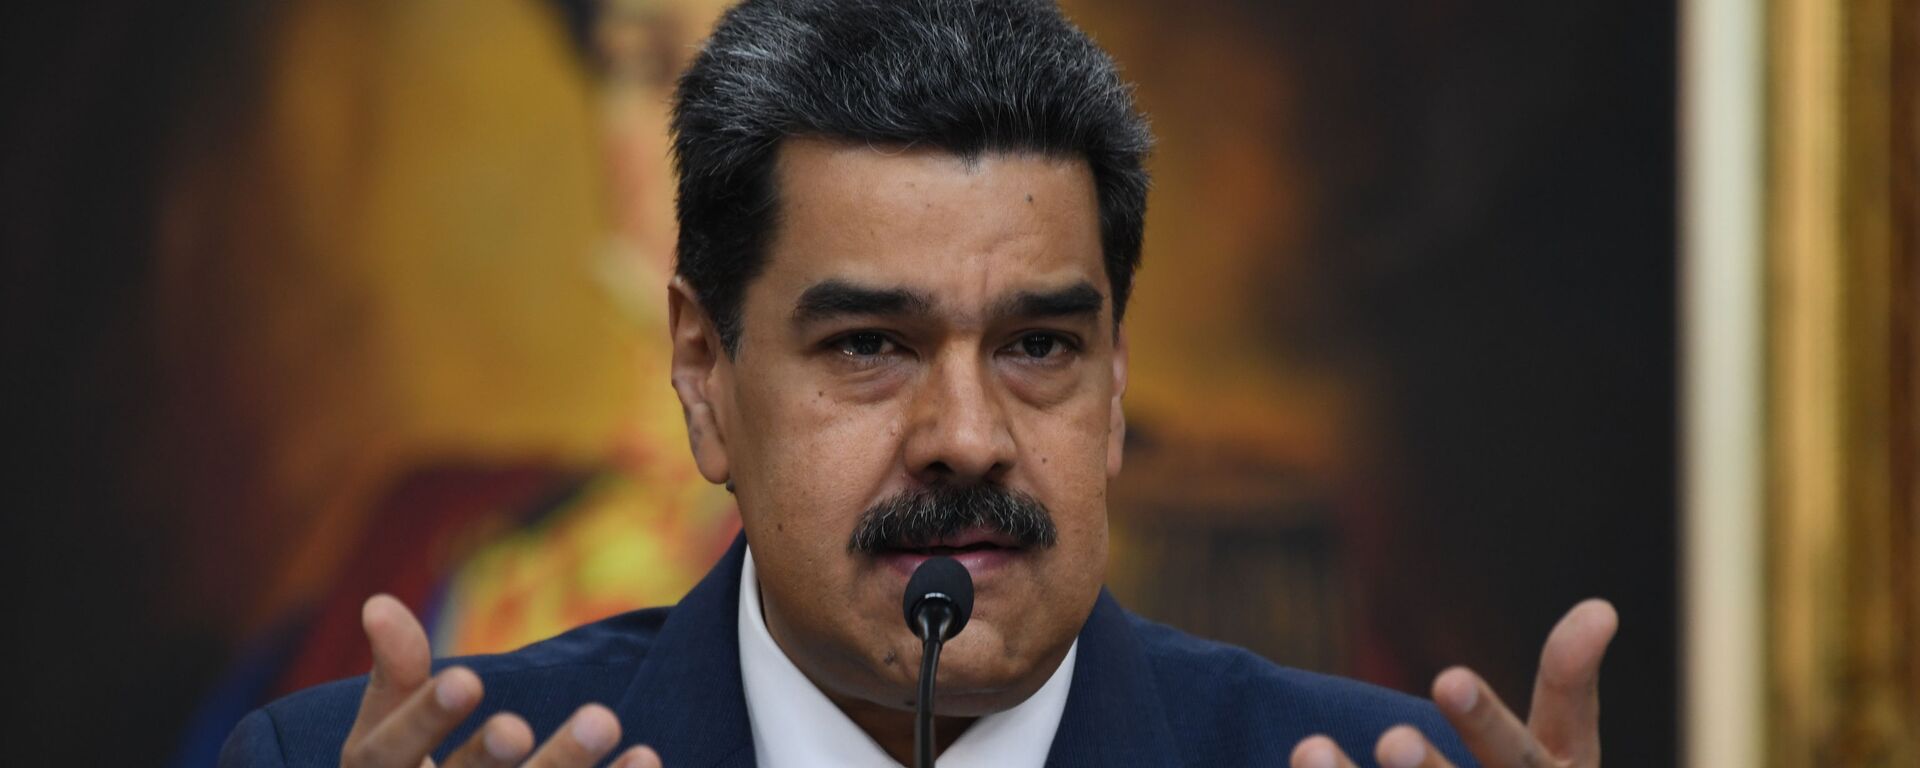 Nicolás Maduro, presidente de Venezuela - Sputnik Mundo, 1920, 29.03.2020